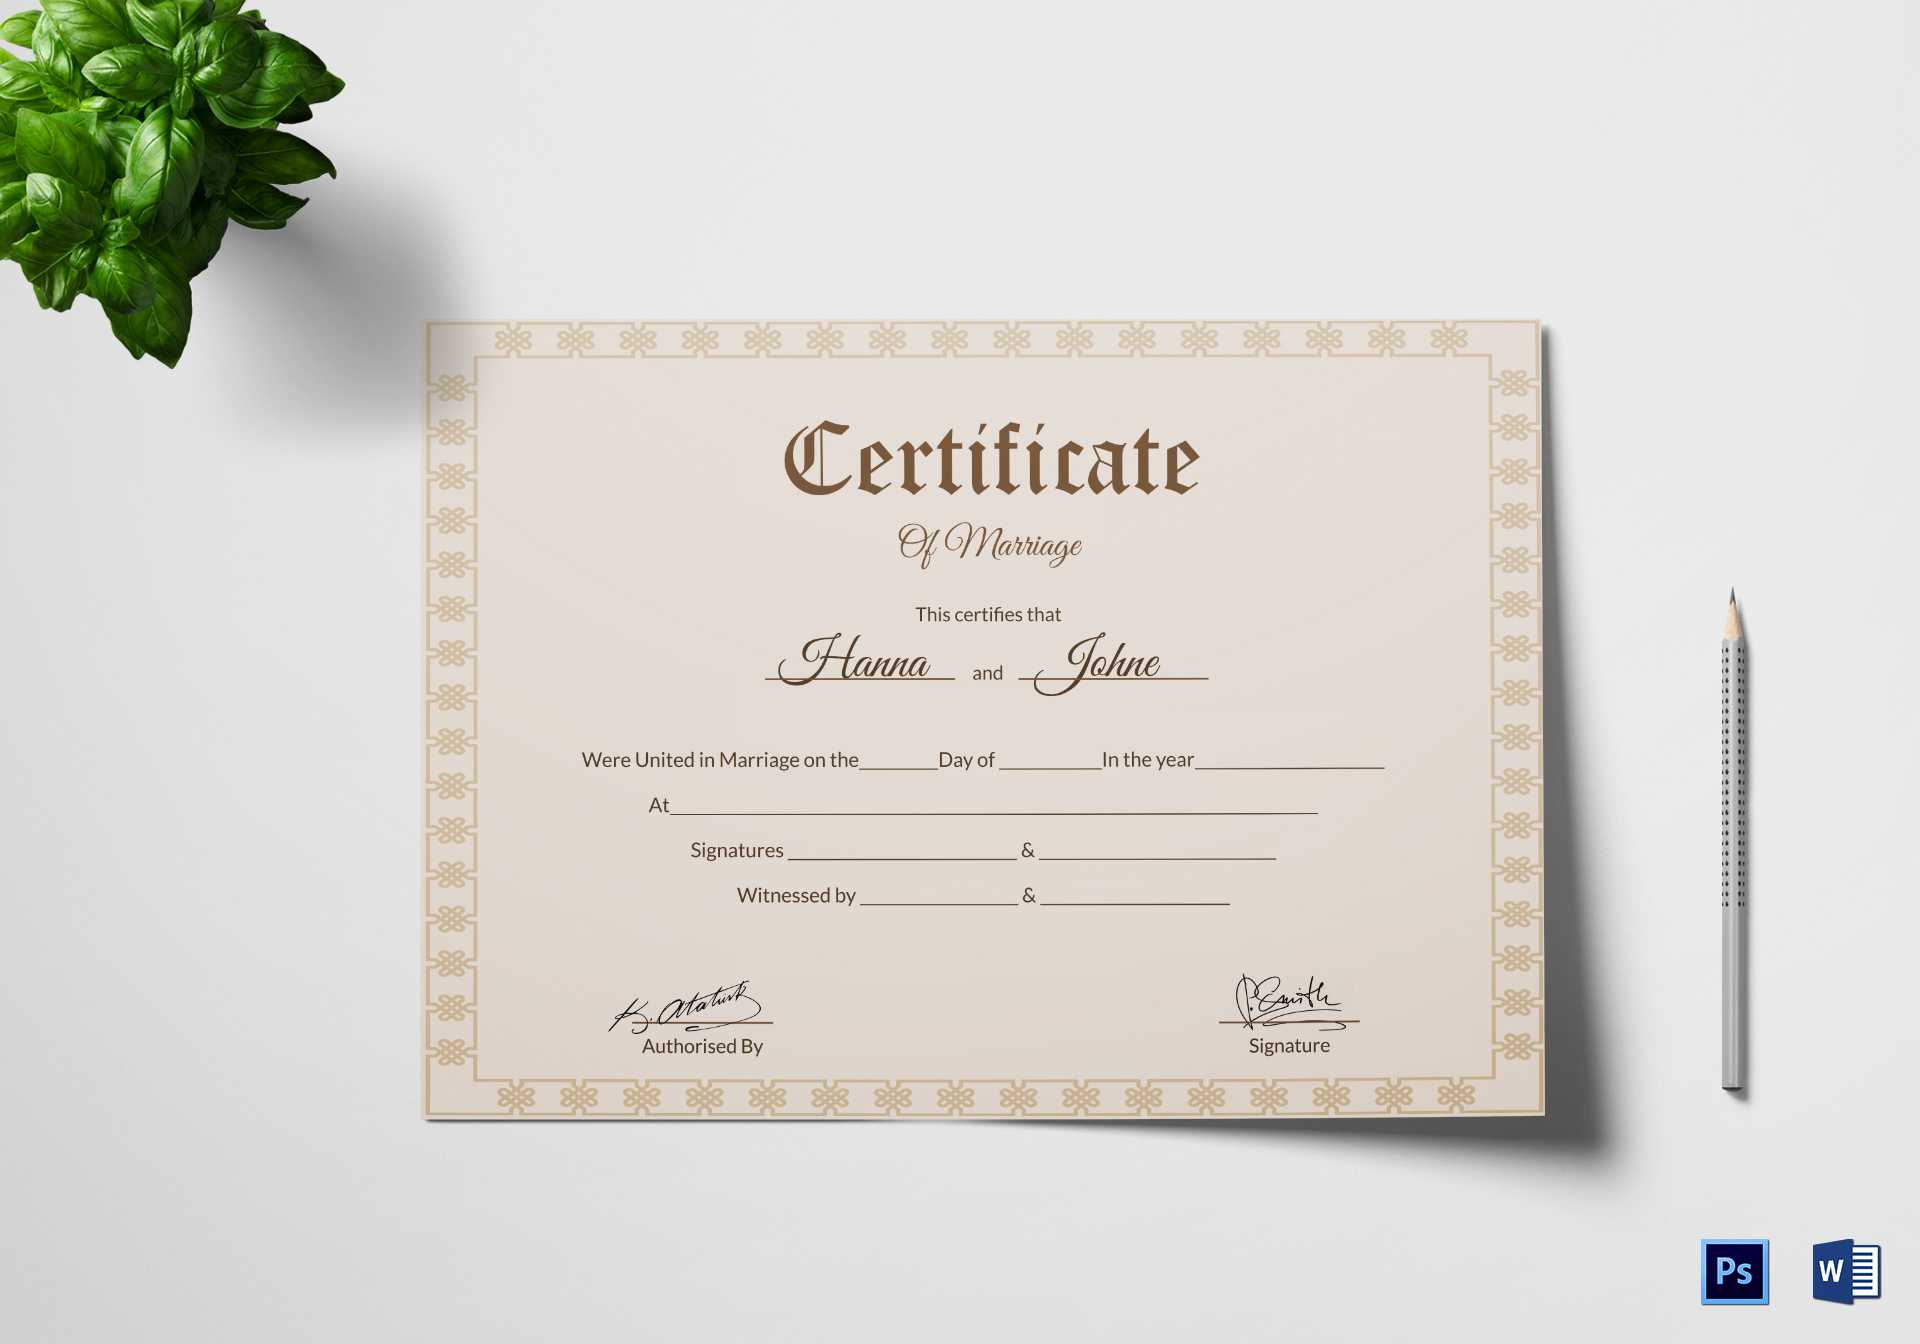 Simple Marriage Certificate Template Regarding Certificate Of Marriage Template